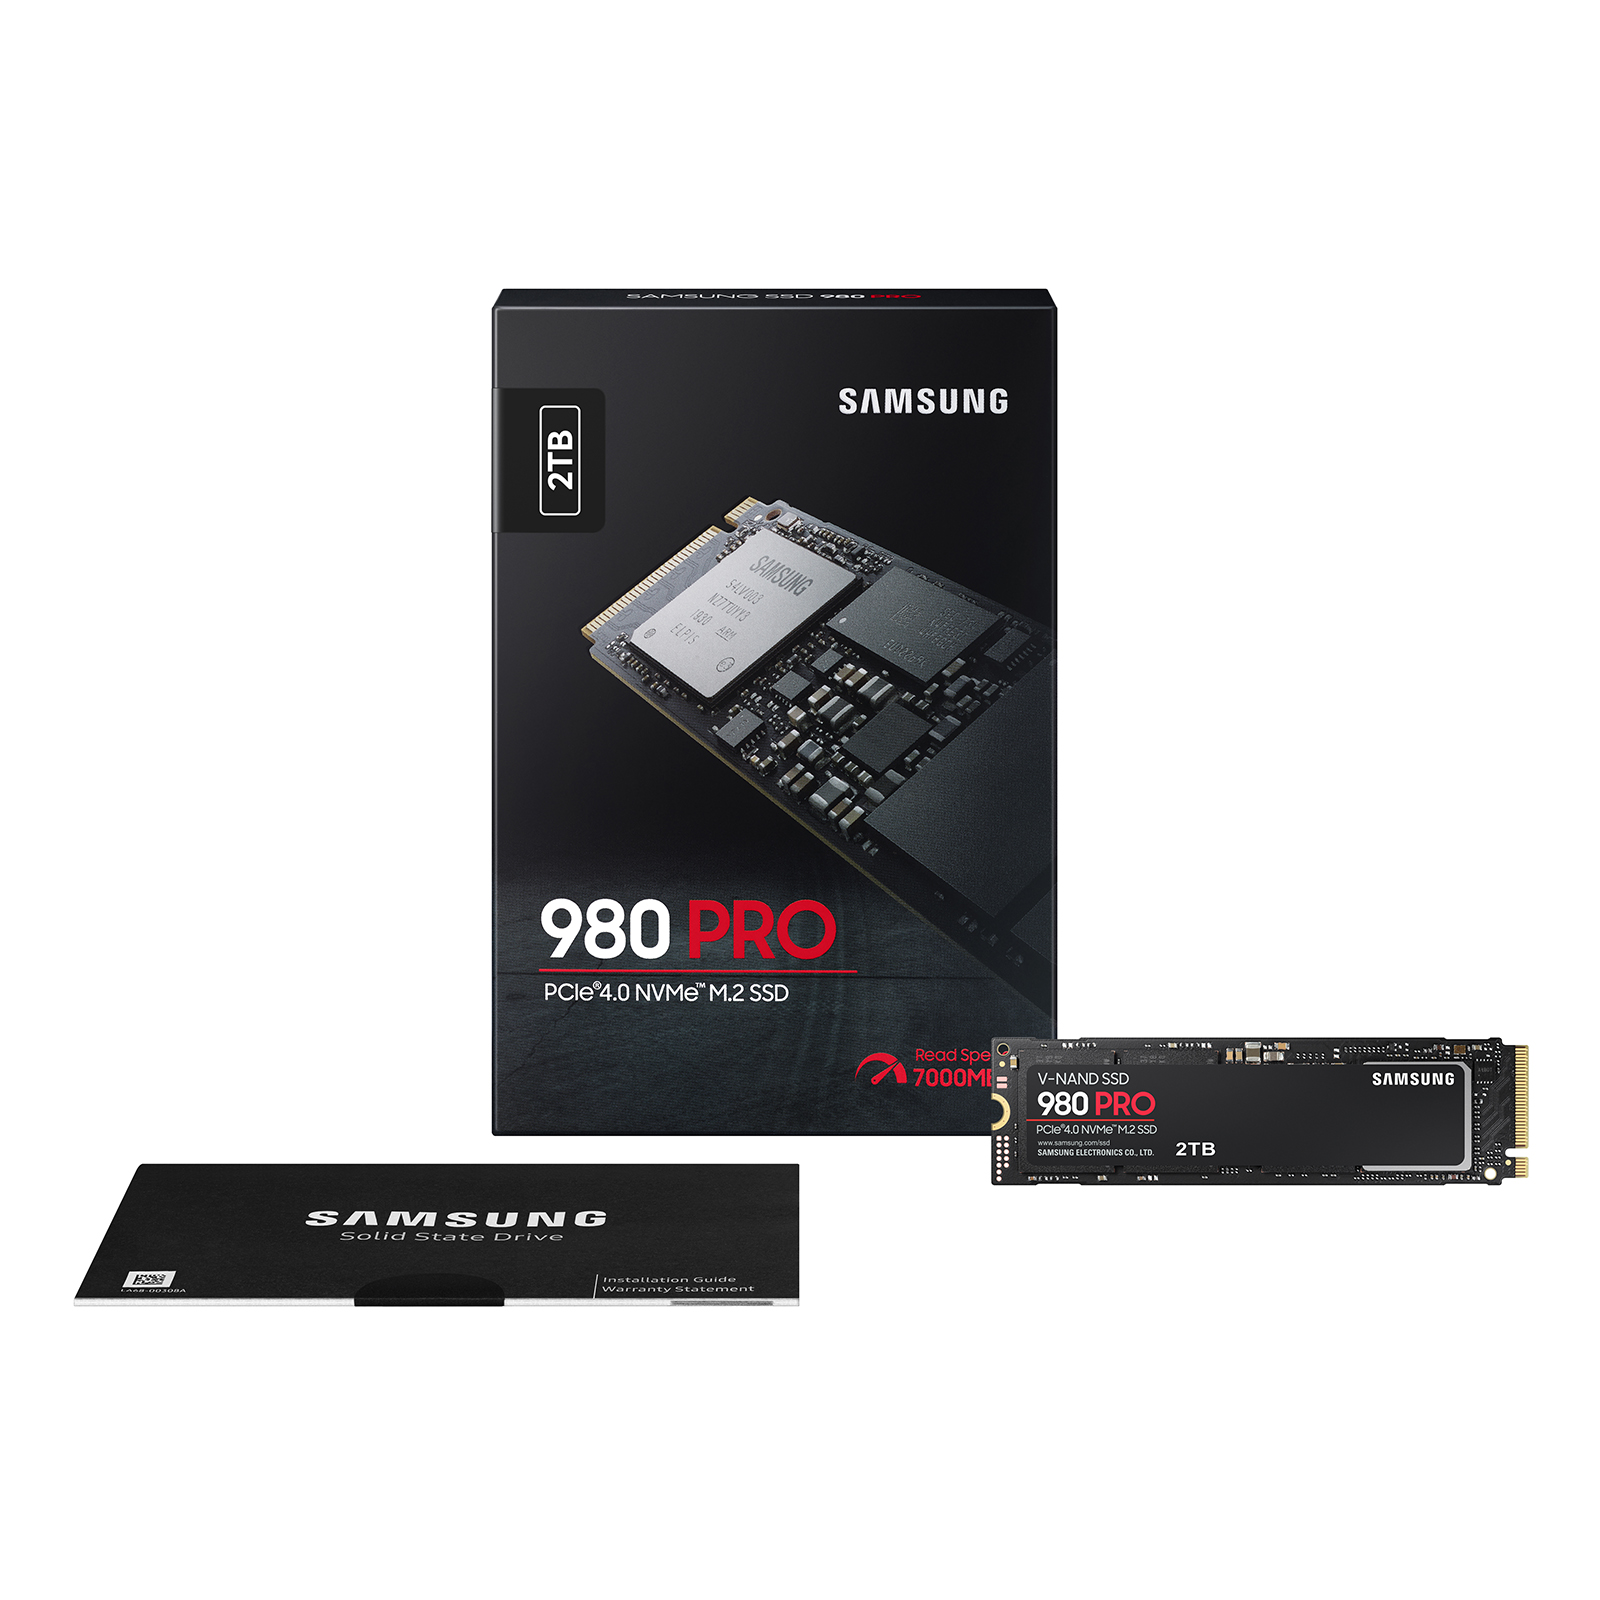 新品 SAMSUNG 980 Pro 2TB  NVMe SSD サムスン m2